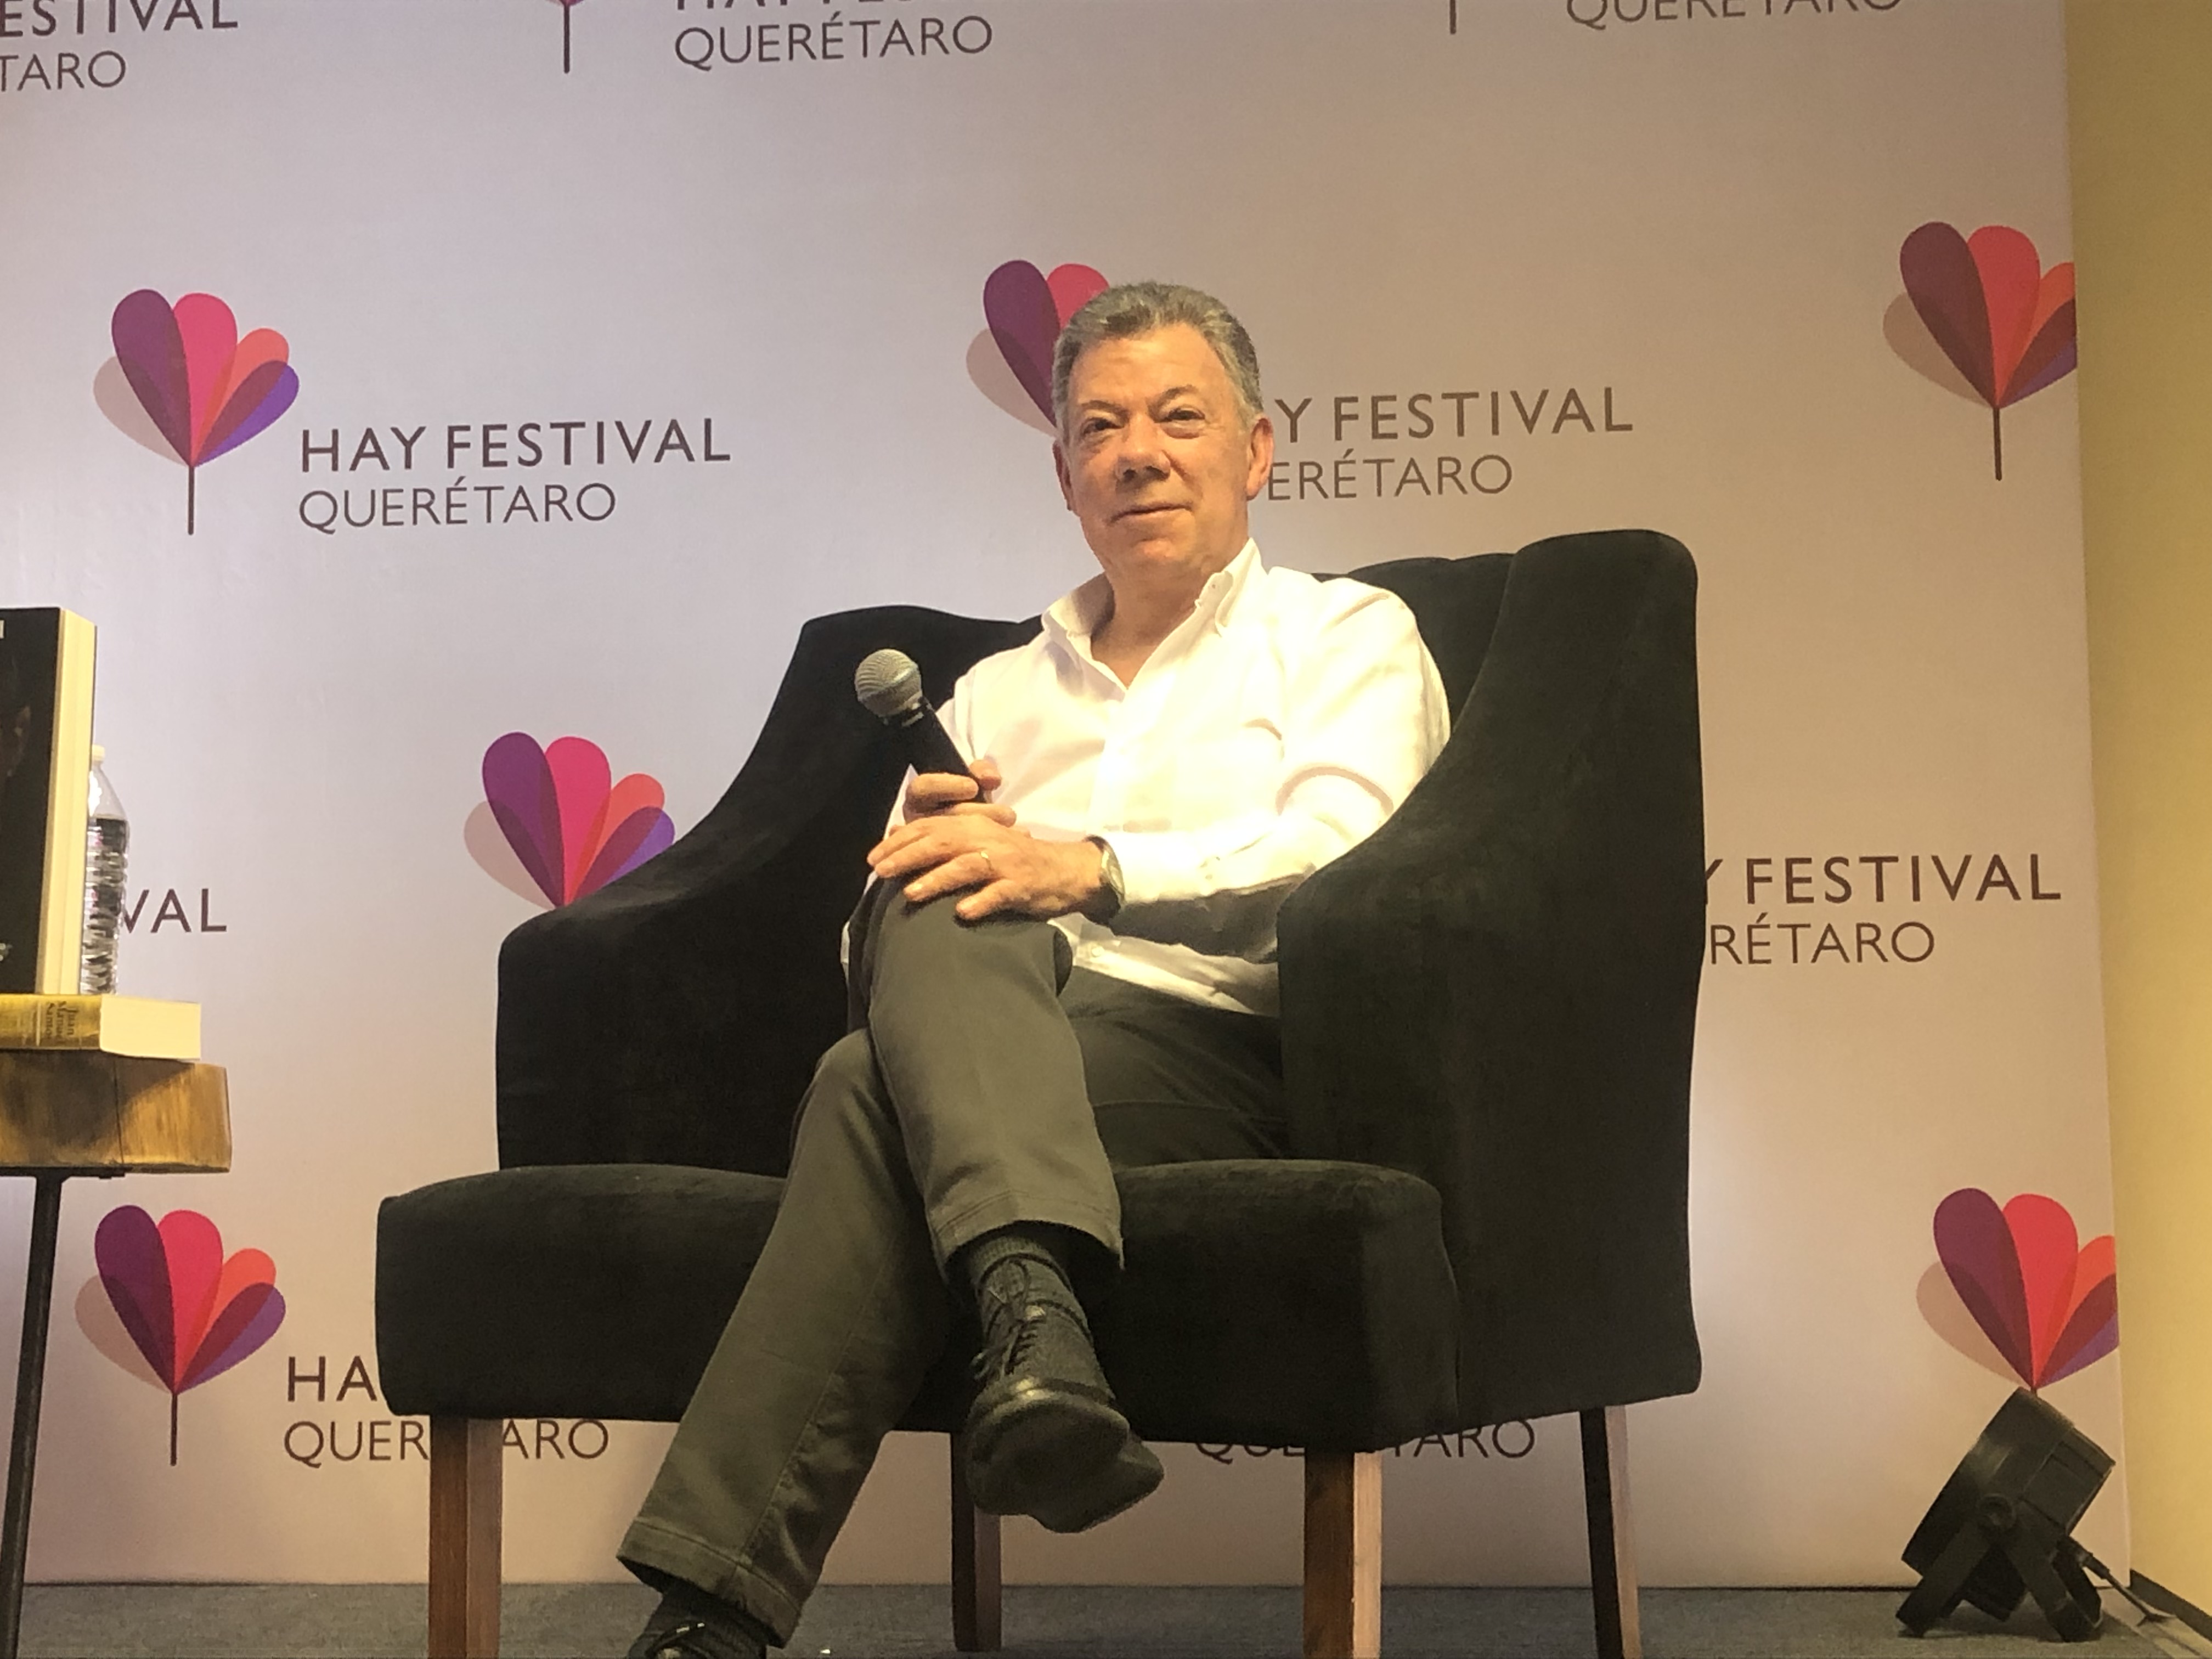  “Maduro podría haber cobijado a detractores de acuerdo con las FARC”: Santos en Hay Festival